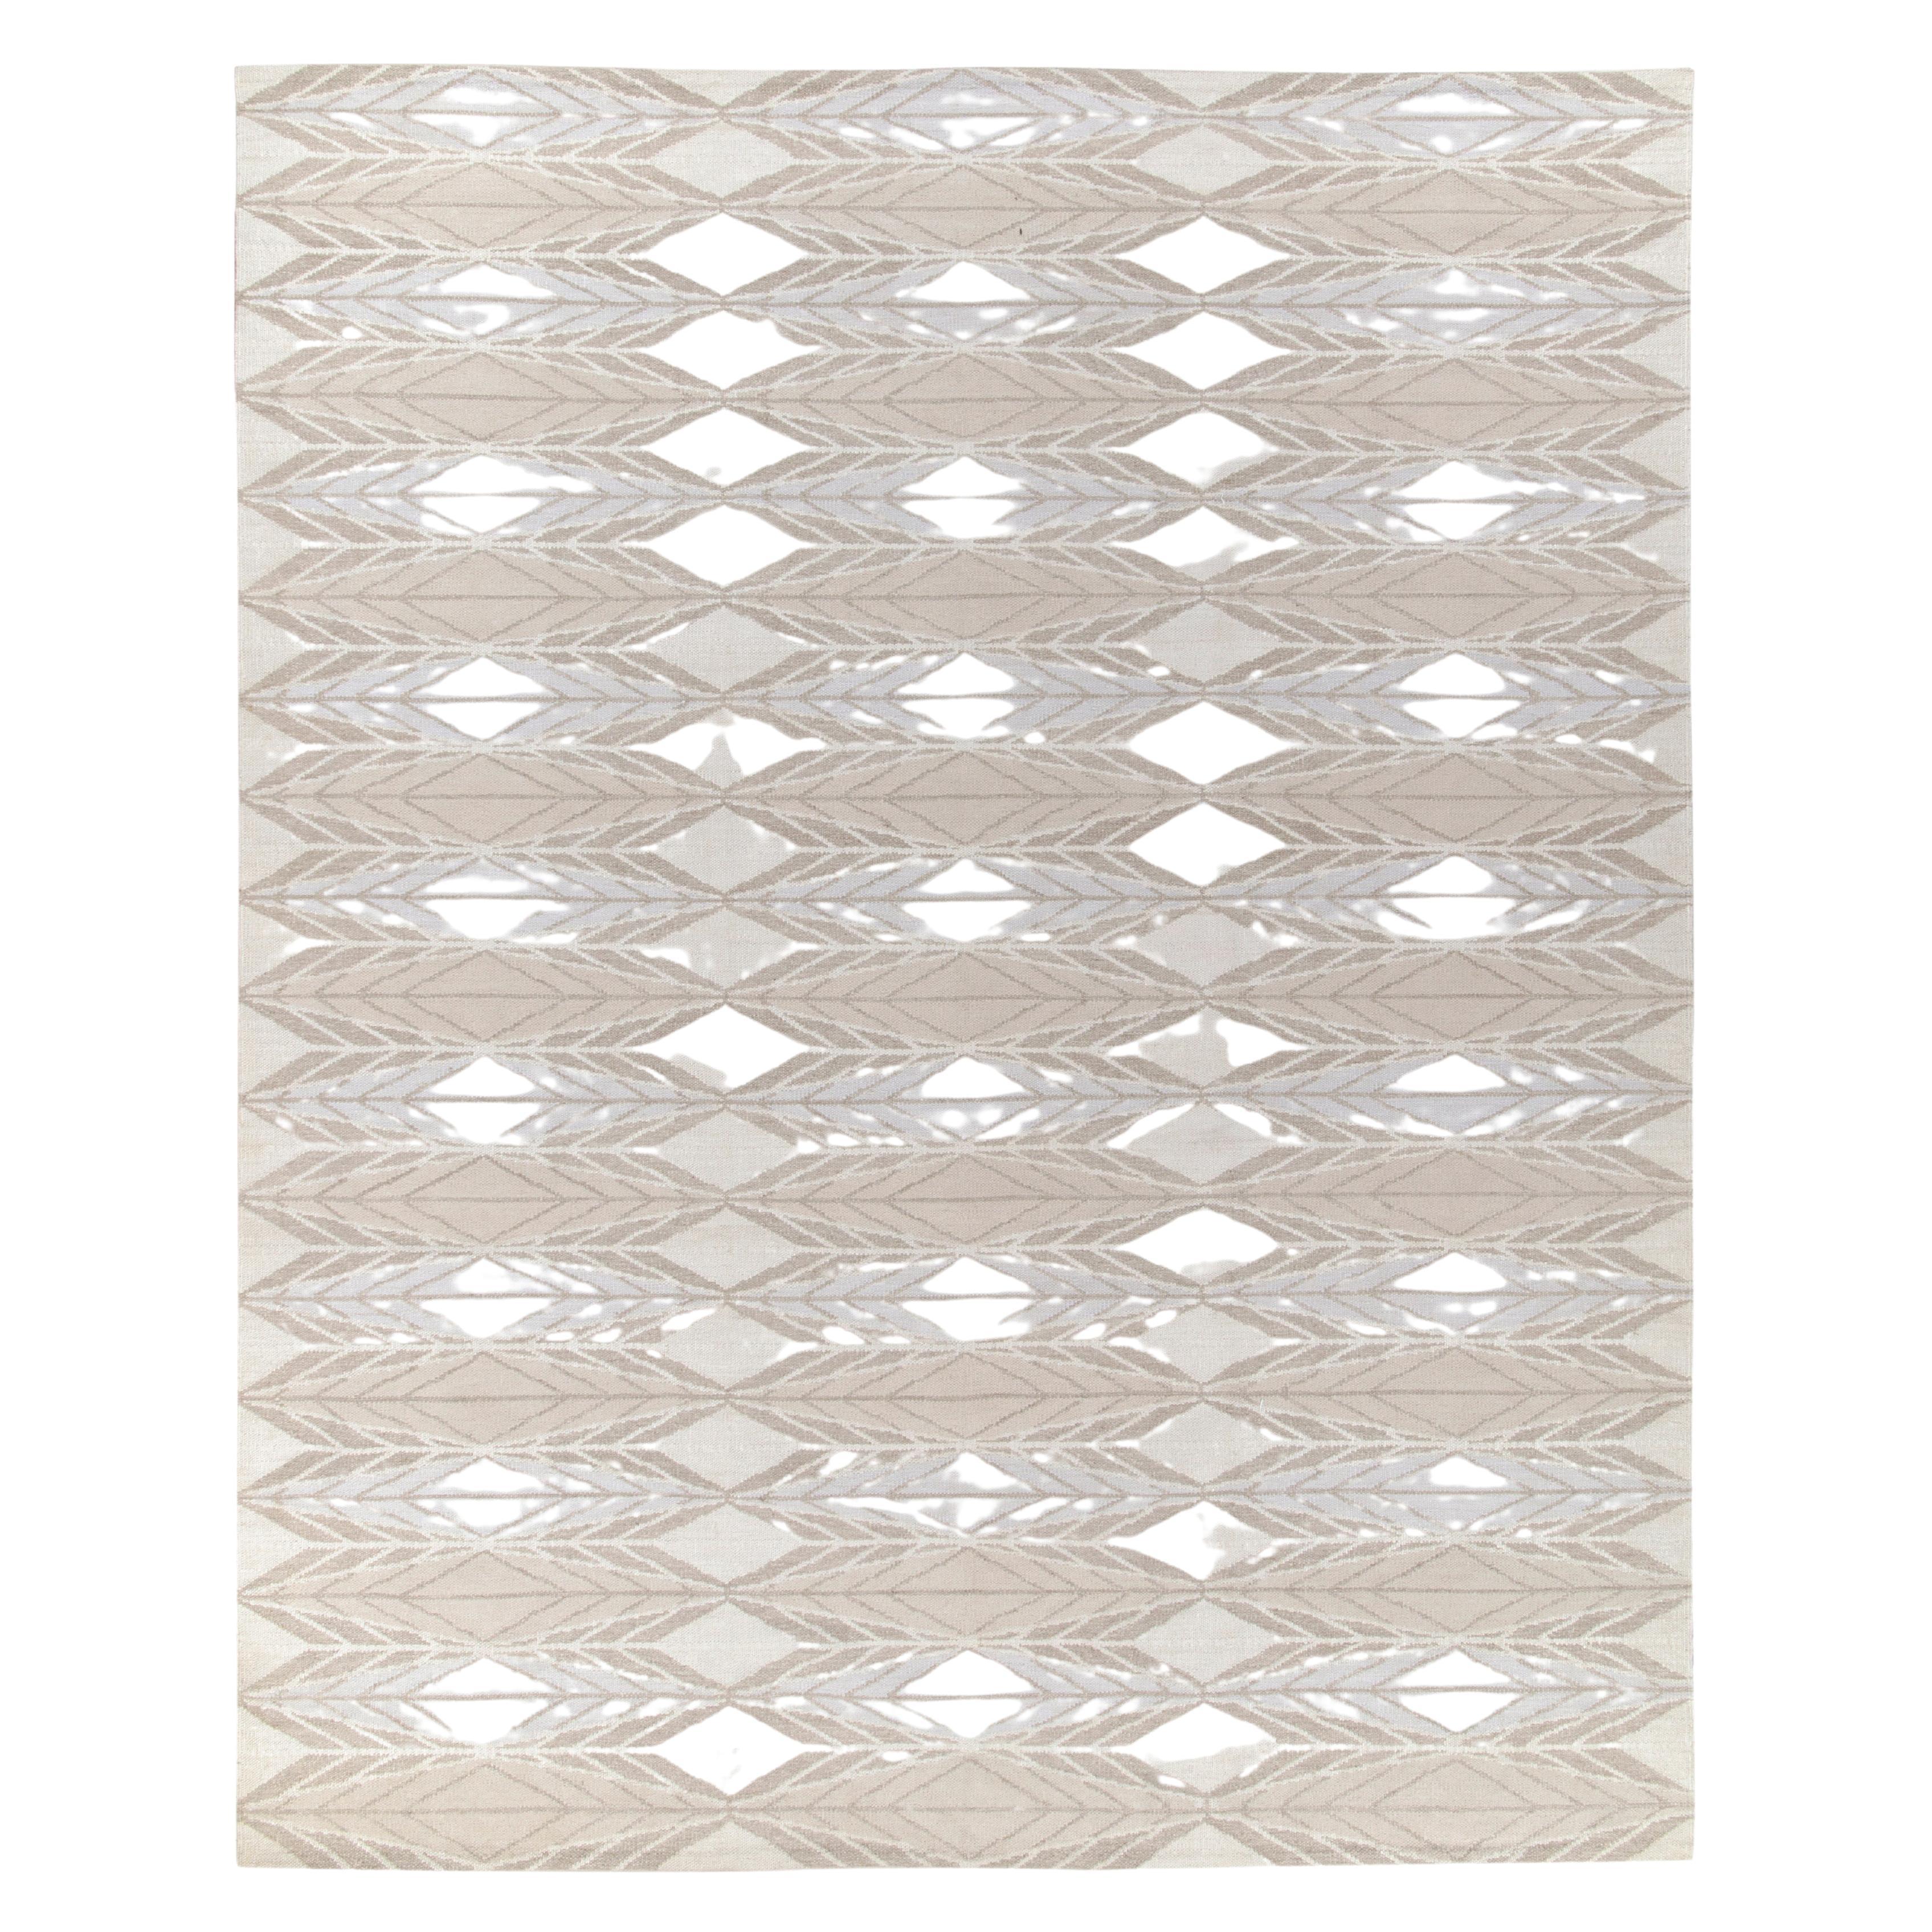 Teppich & Kelim-Teppich im skandinavischen Stil in Weiß, Beige mit geometrischem Muster